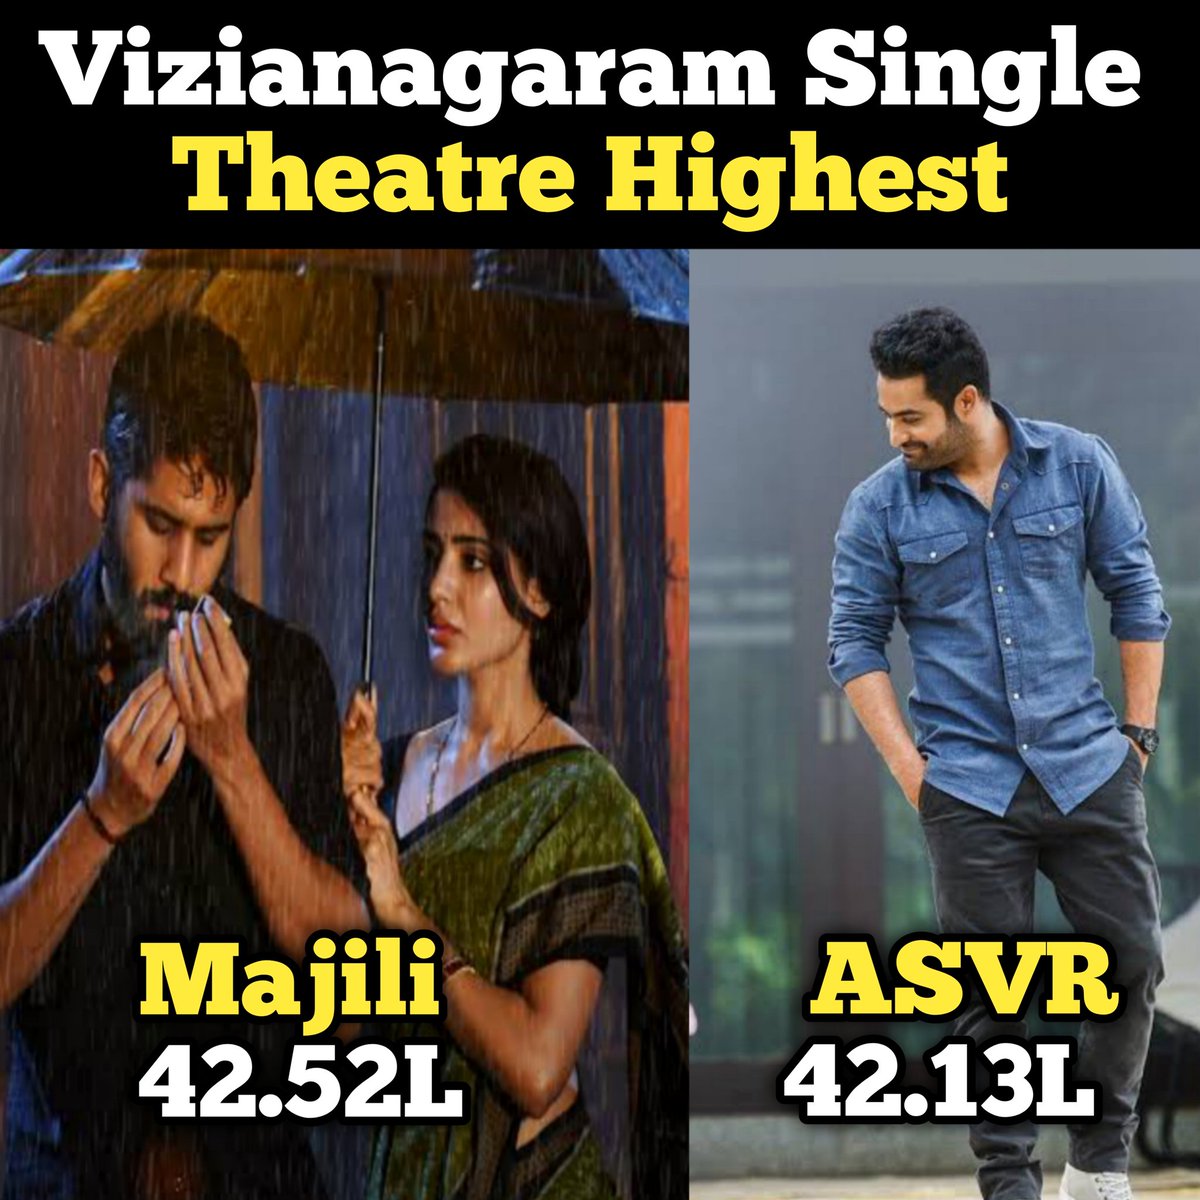 Vizianagaram Single Theatre Highest

Majili - 42.52L
 ASVR - 42.13L 

Happy Birthday Sam 🐯
#HappyBirthdaySamantha